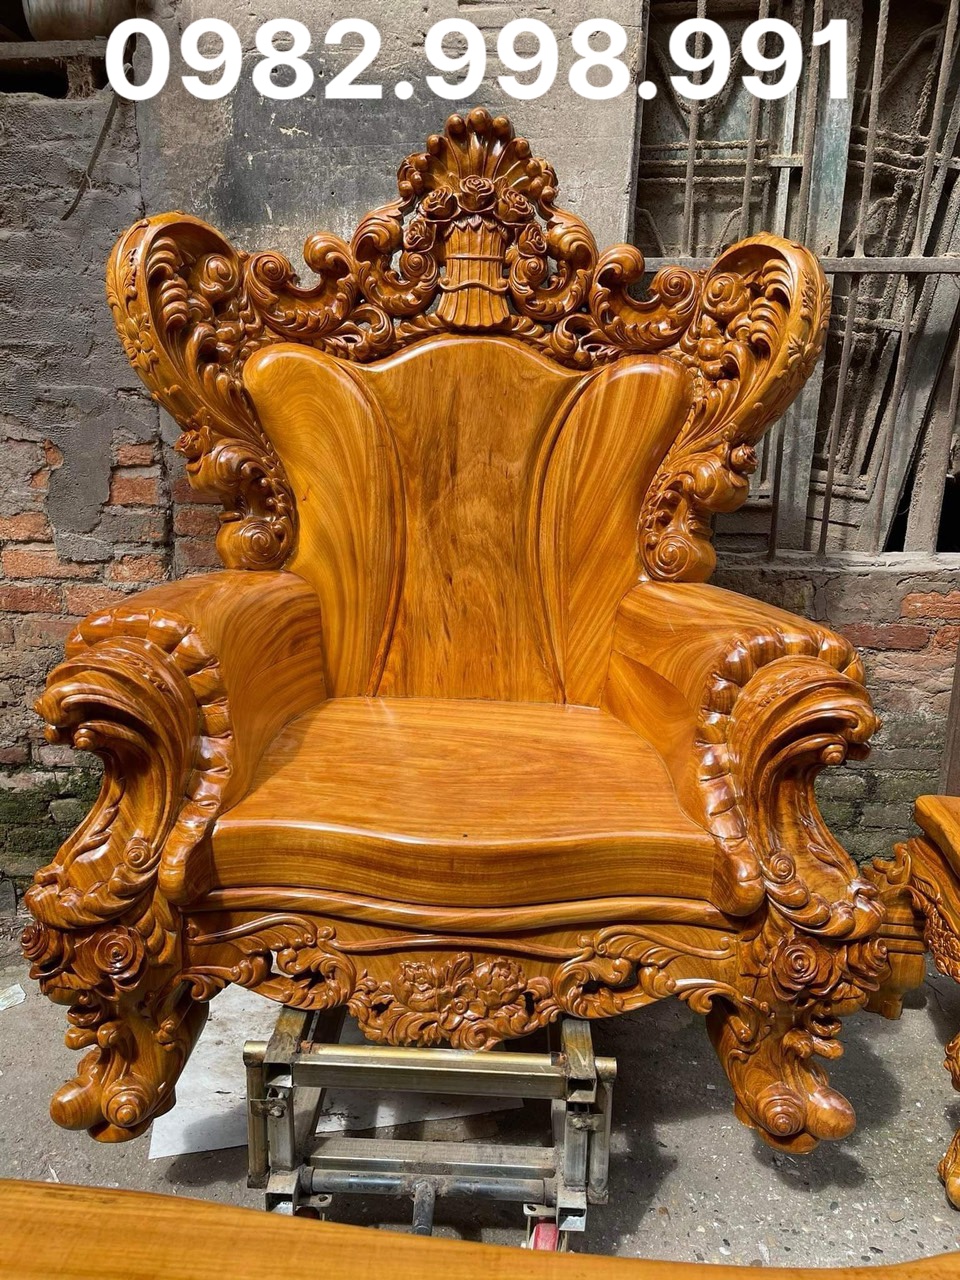 Bộ ghế hoàng gia gỗ gõ 6 món đục chạm sắc nét